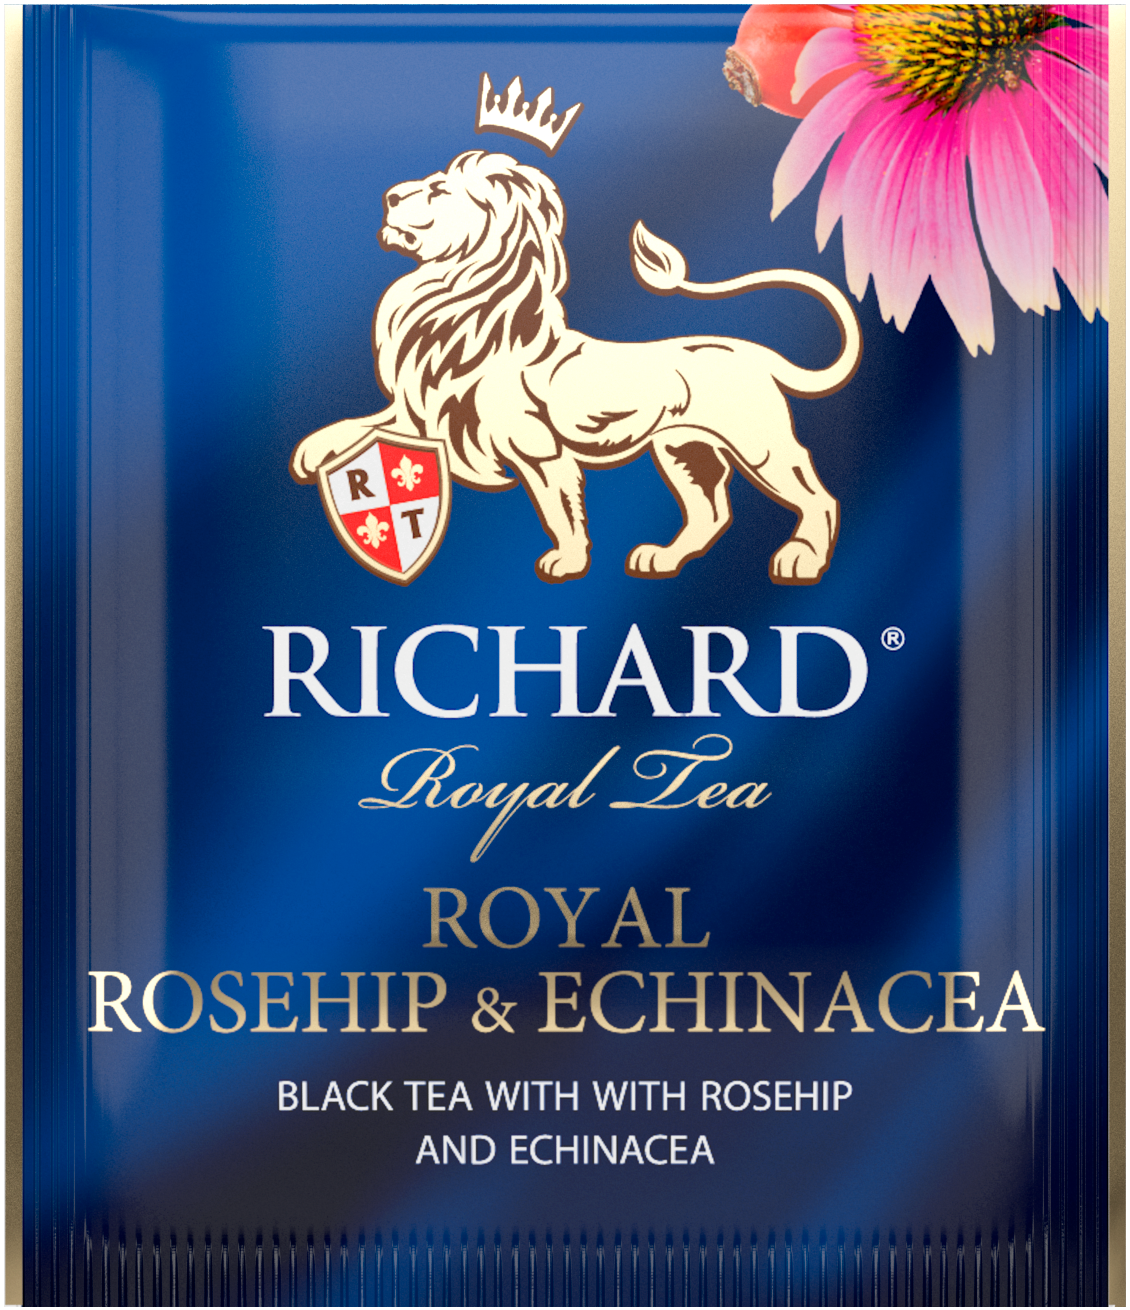 Richard Royal Csipkebogyó&Echinacea, ízesített fekete tea, filteres, 42,5g - RichardTeavn - vásároljon a 899.00 Ft